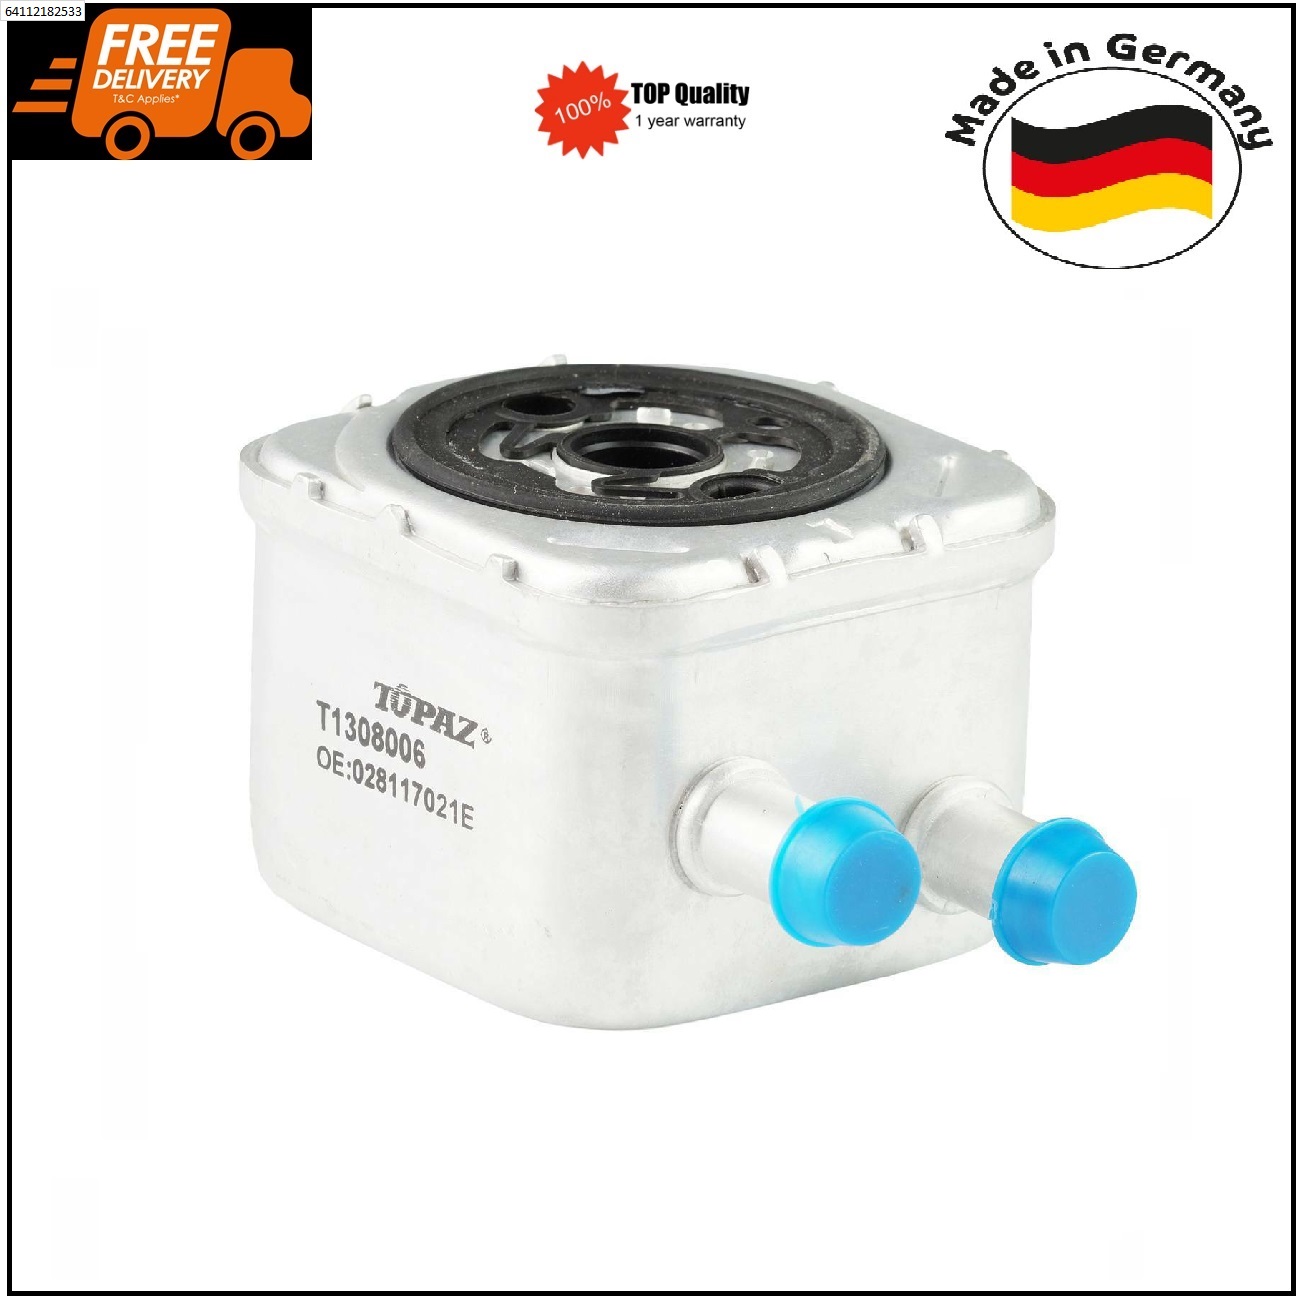 Engine Oil Cooler for Audi A4 A6 TT Skoda Superb VW Passat Bora 028117021E German Made